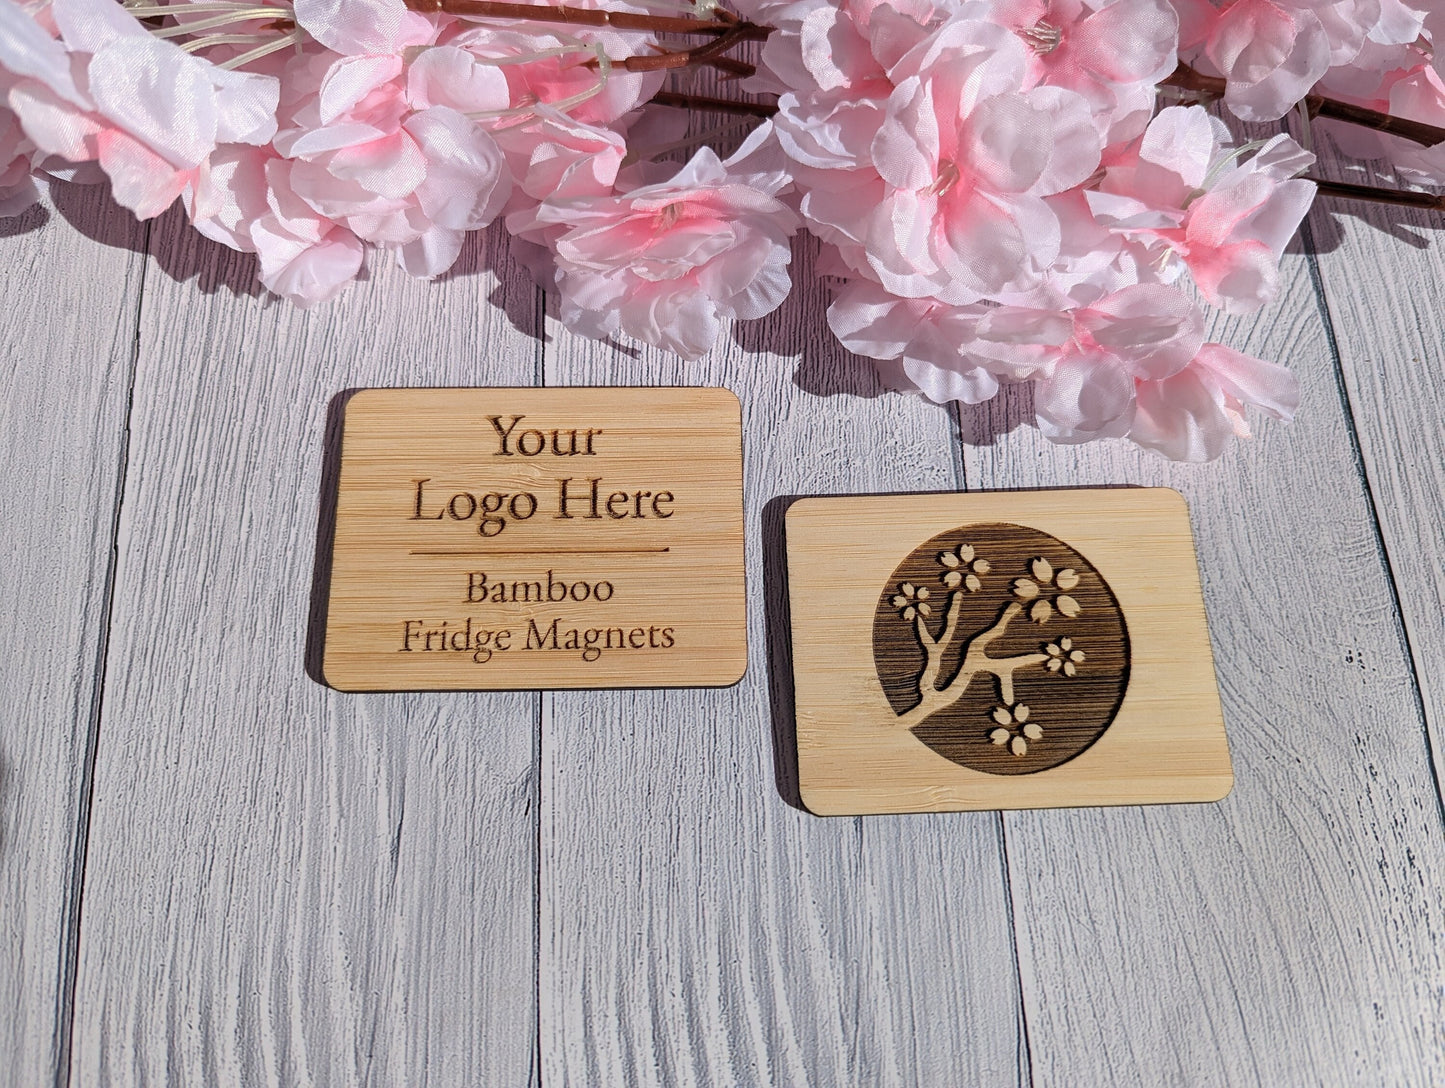 Personalised Fridge Magnets, Bamboo, Custom Fridge Magnets, Logo Fridge Magnets - Sustainable Business Promotional Items - 3 sizes